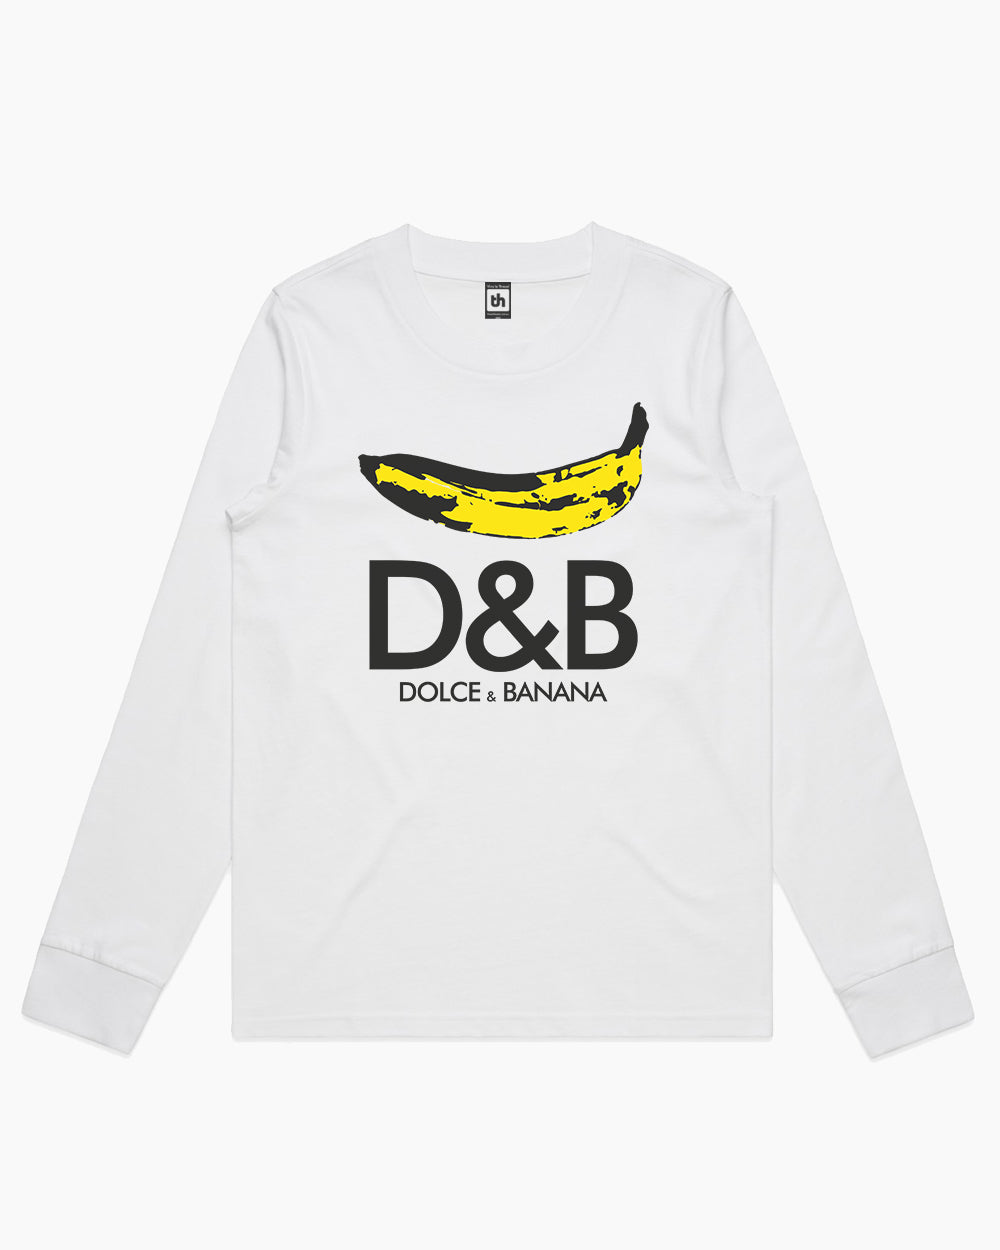 Dolce & Banana Long Sleeve Australia Online #colour_white